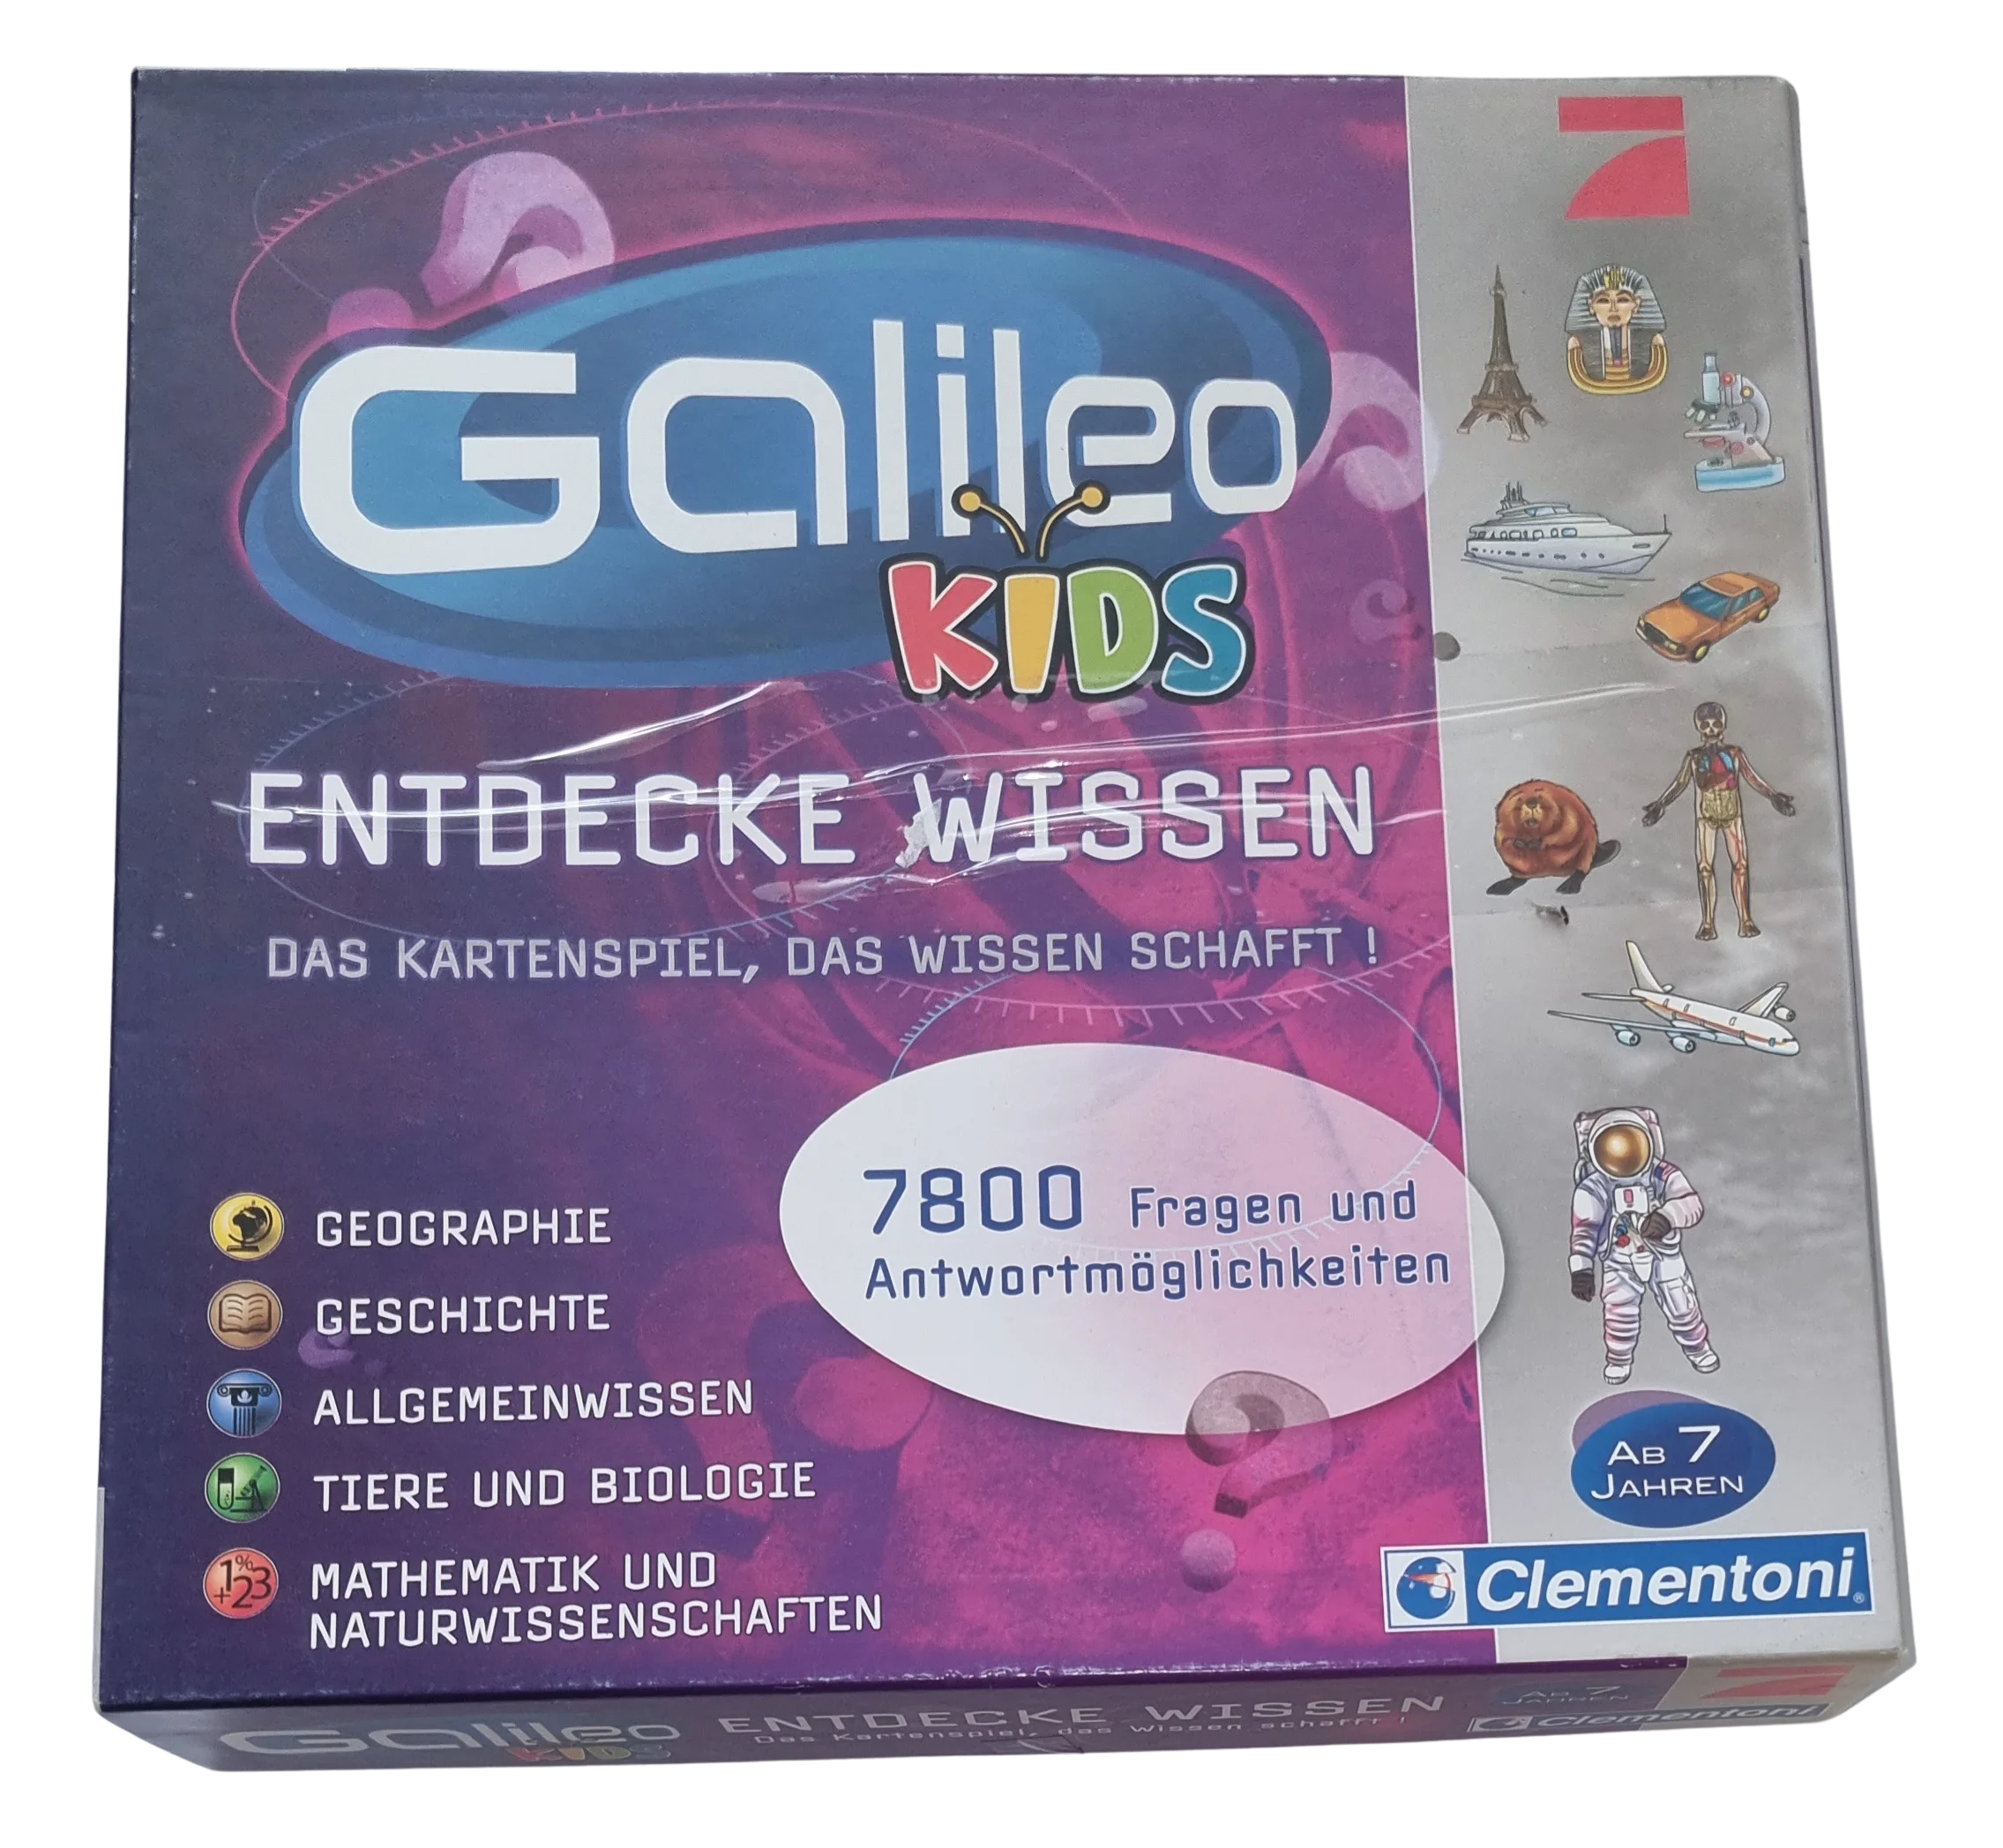 Clementoni Galileo Kids Entdecke Wissen Pink